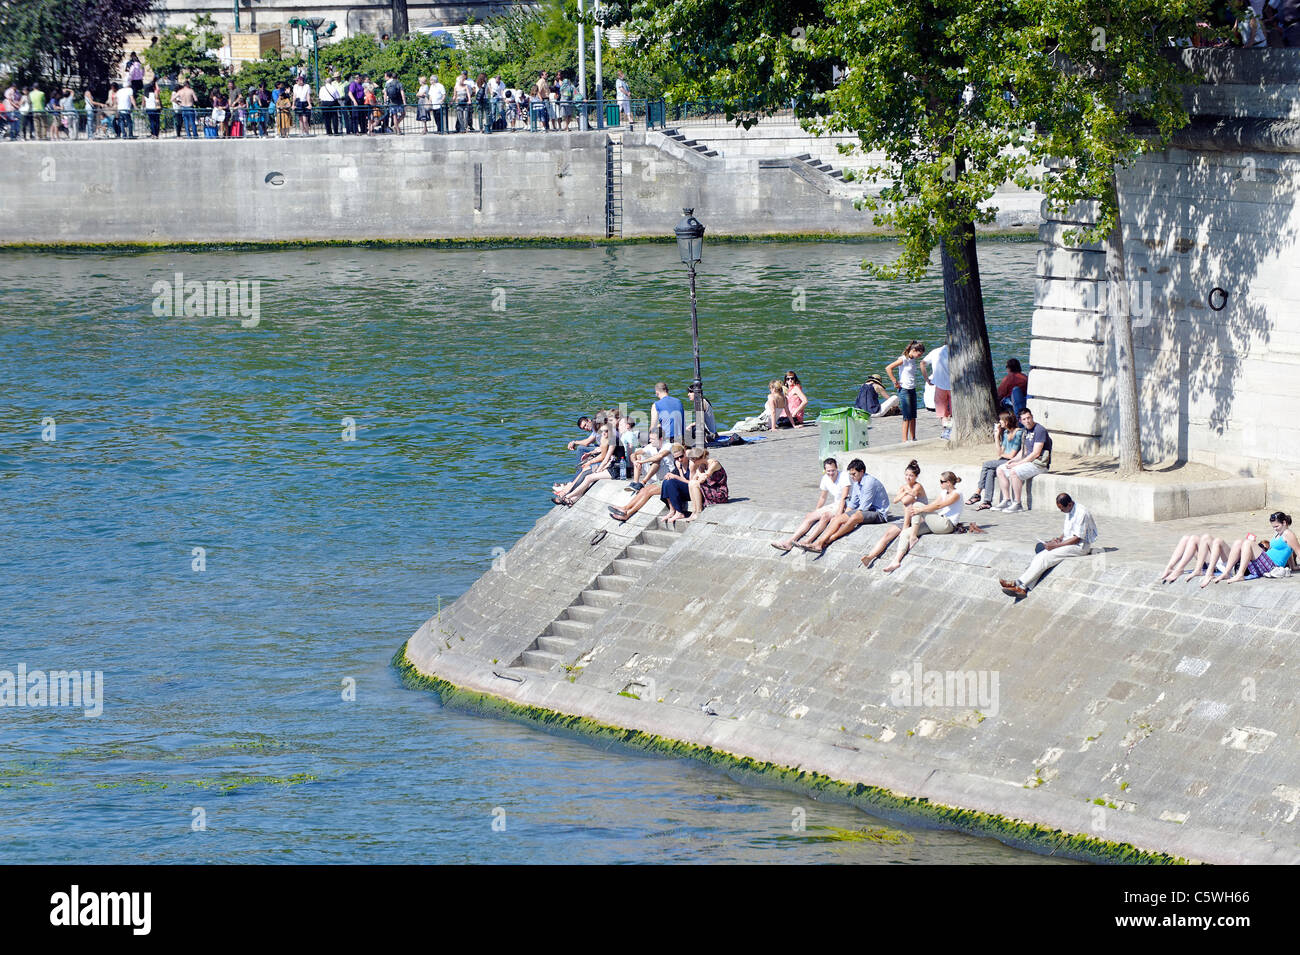 Les parisiens de soleil sur les rives de la rivière Seine Banque D'Images